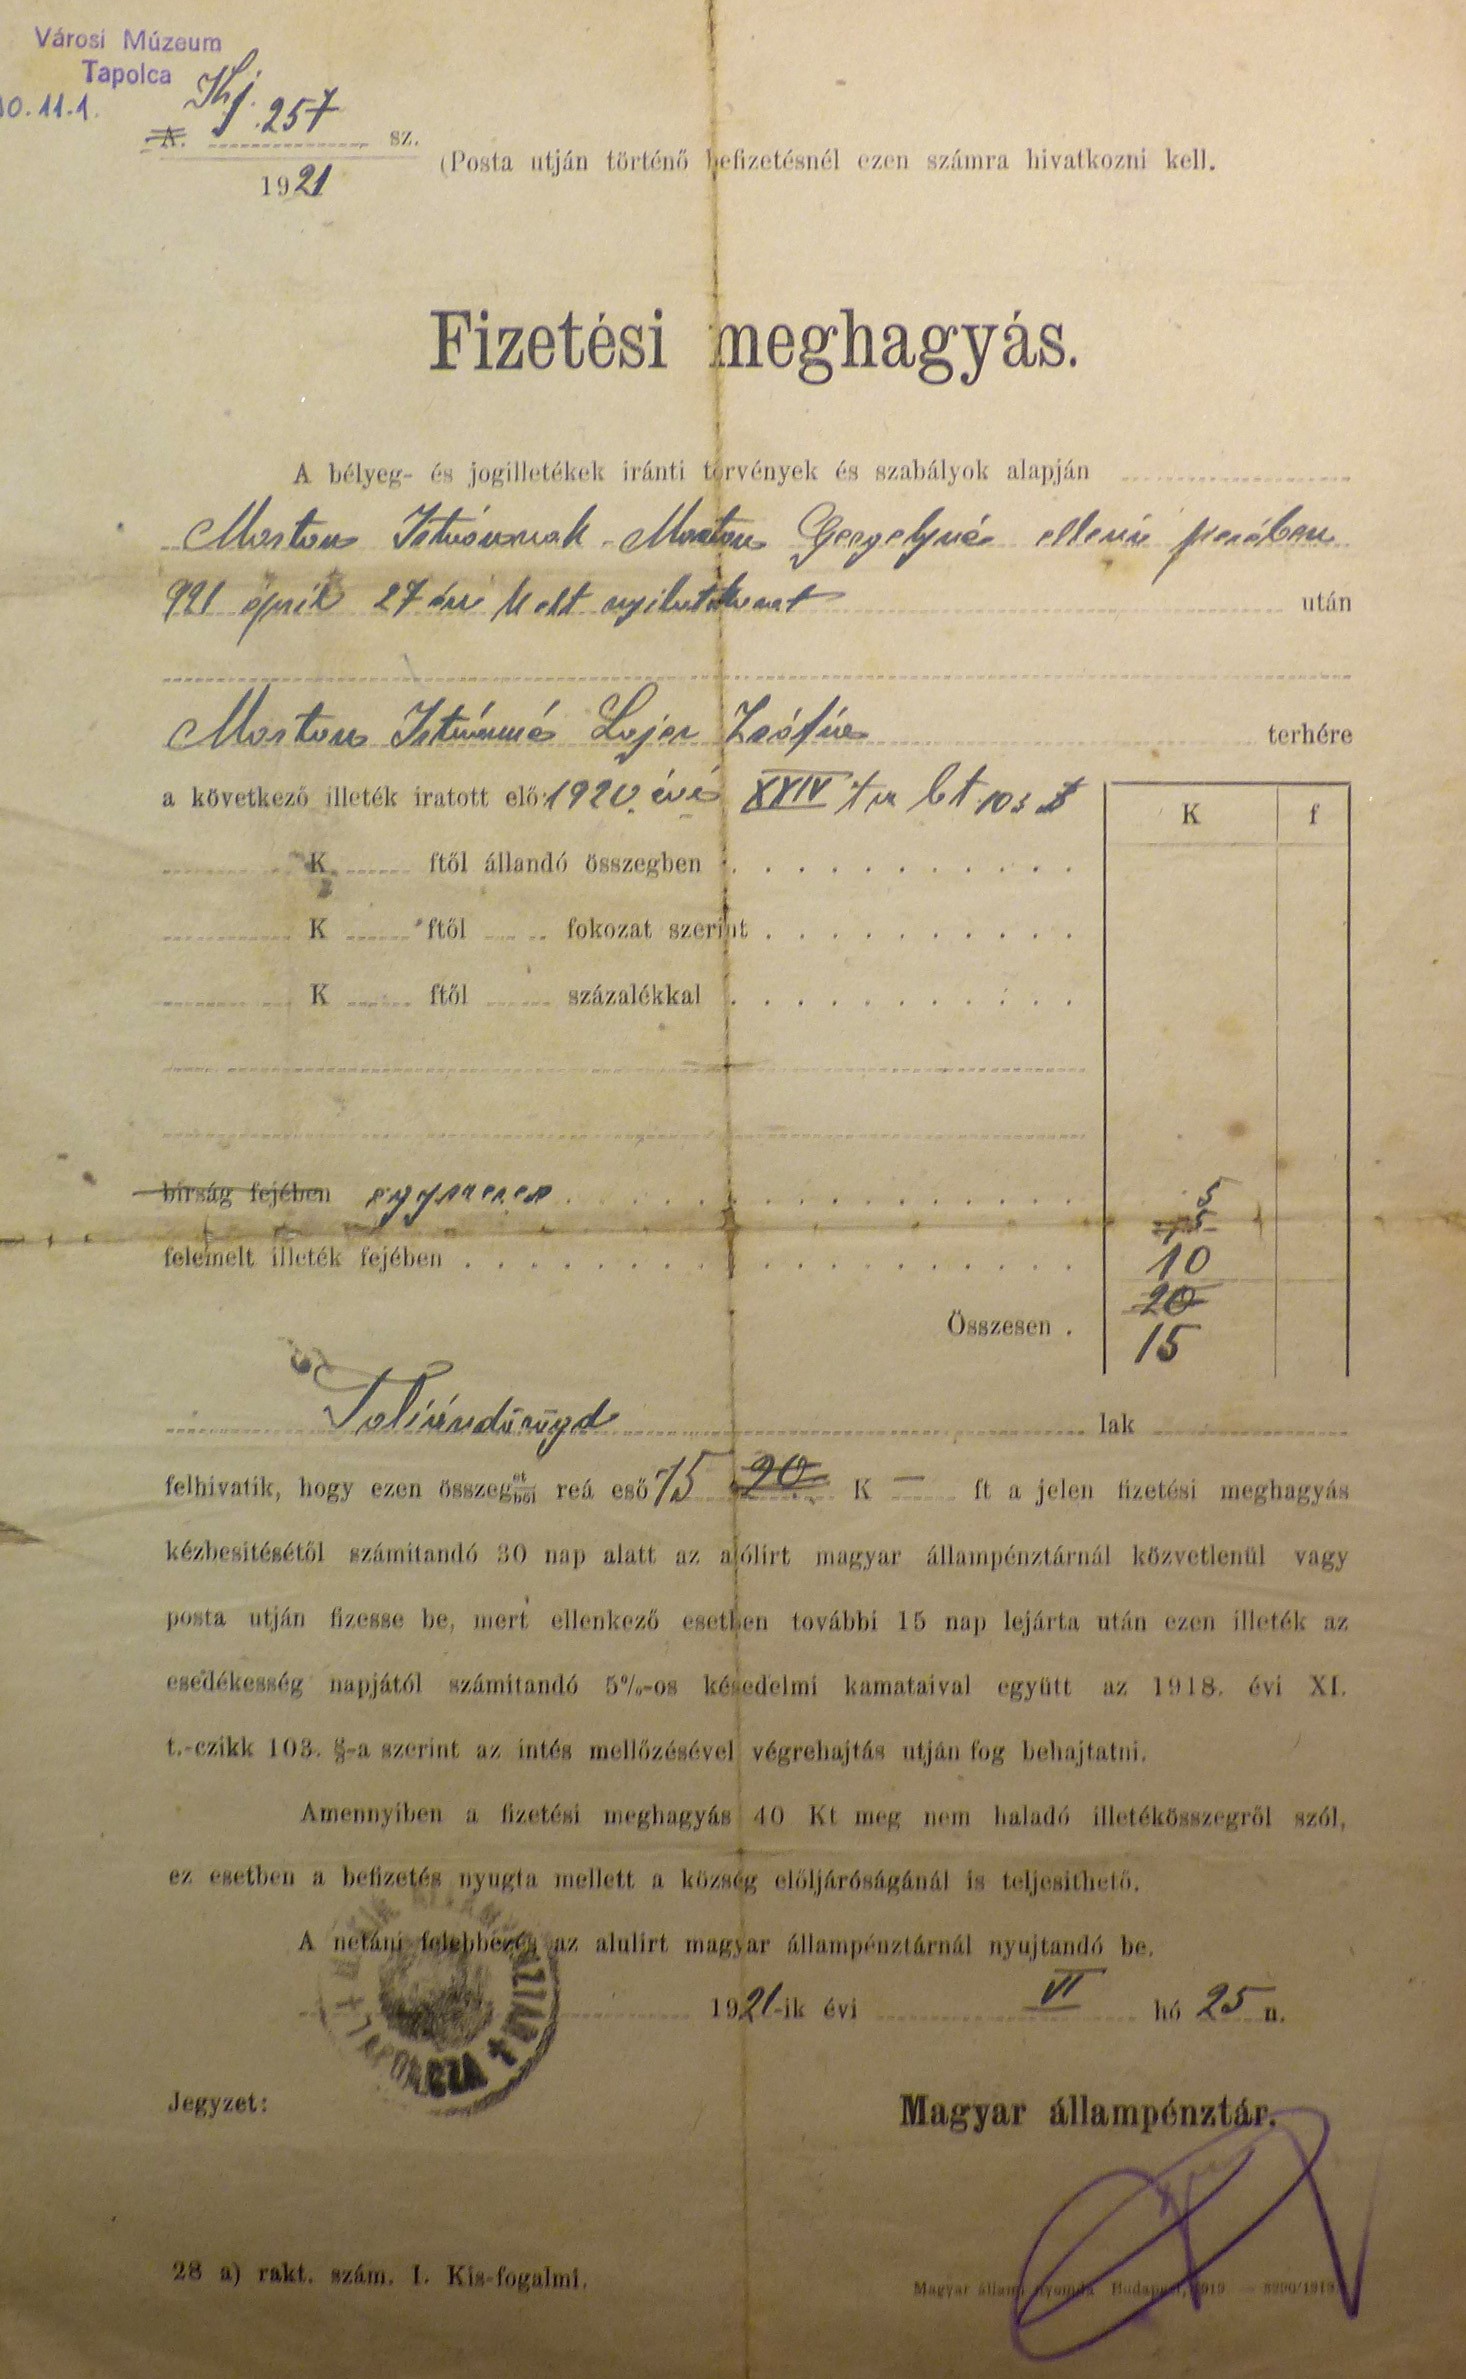 Fizetési meghagyás 1921 (Tapolcai Városi Múzeum CC BY-NC-SA)